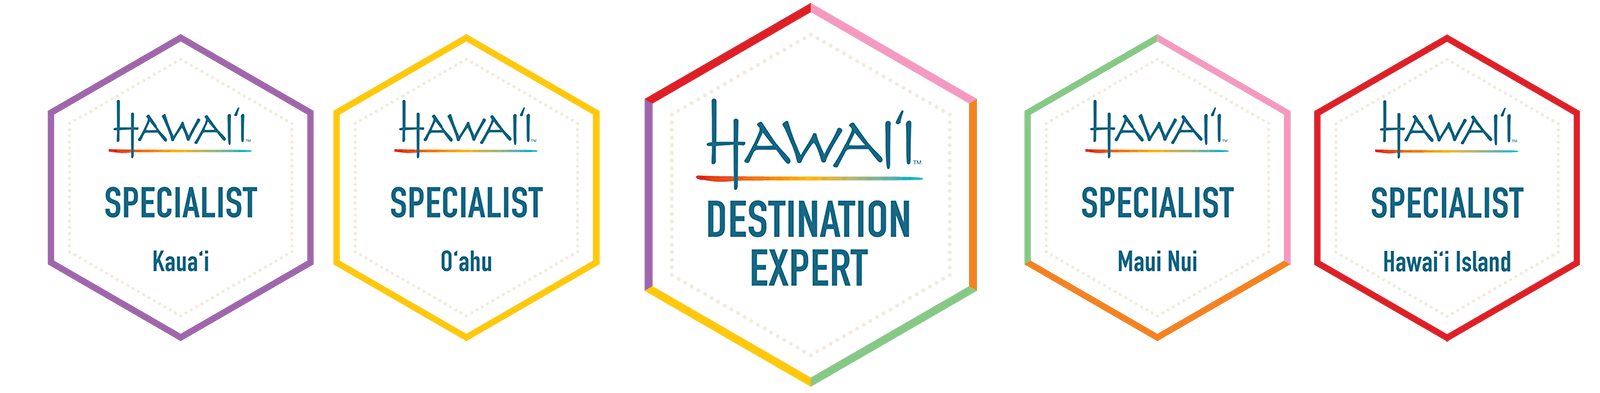 Hawaii Destination Expert